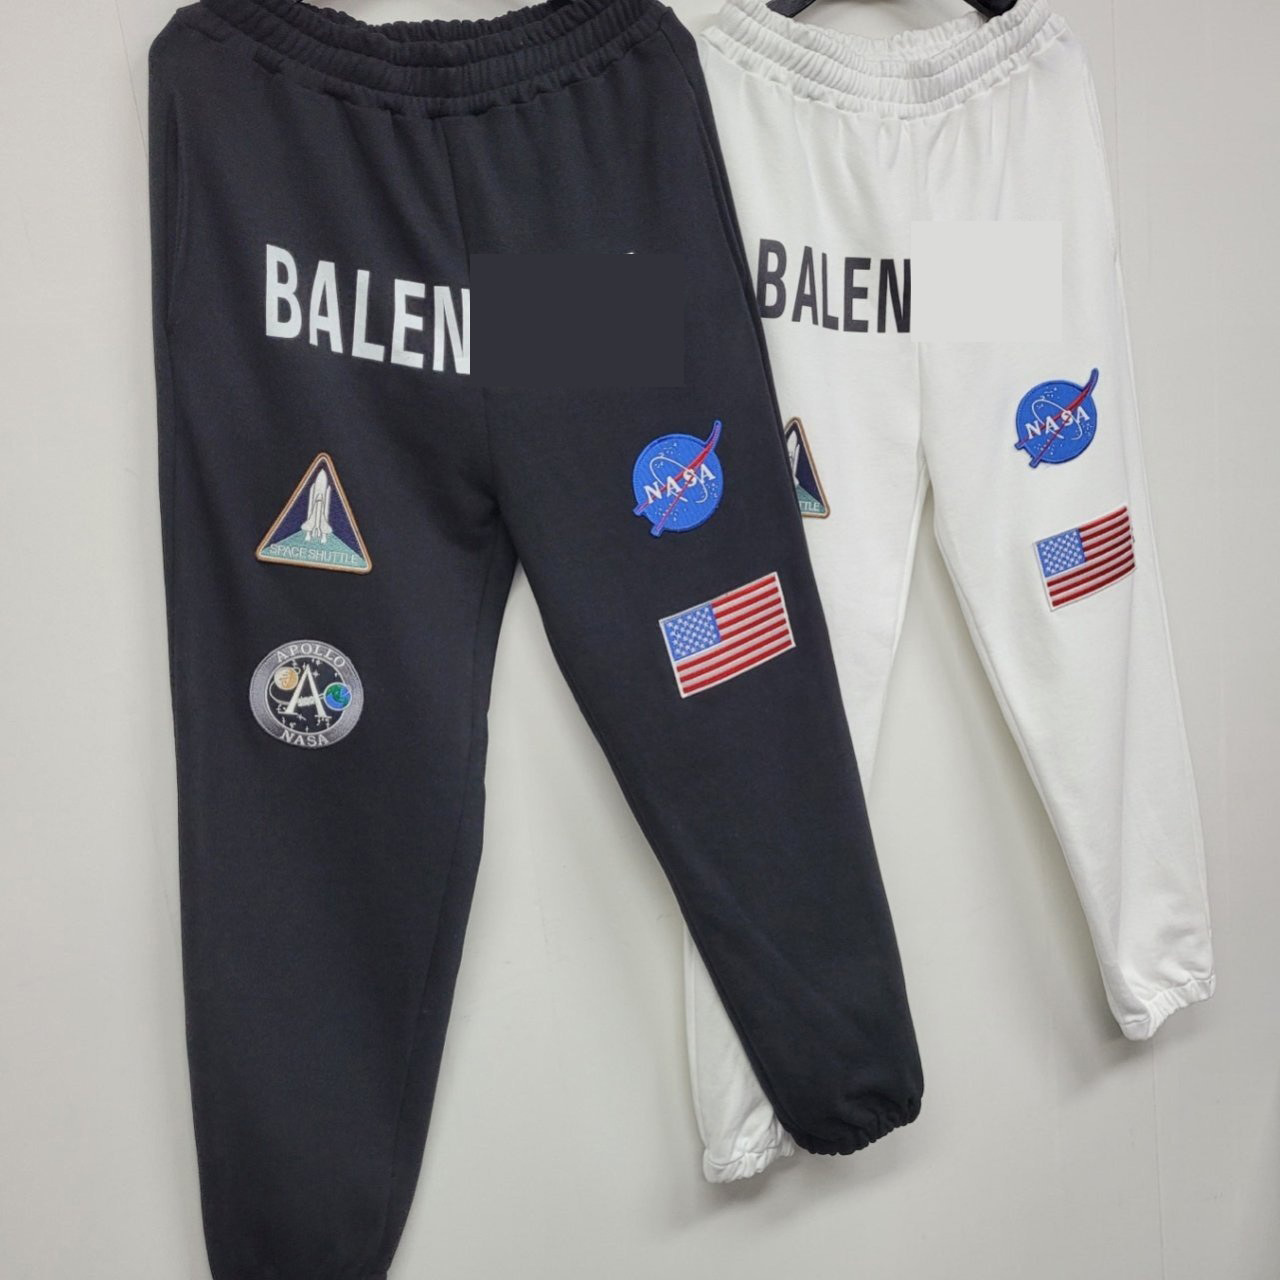 발렌 X NASA 스페이스 조거 팬츠